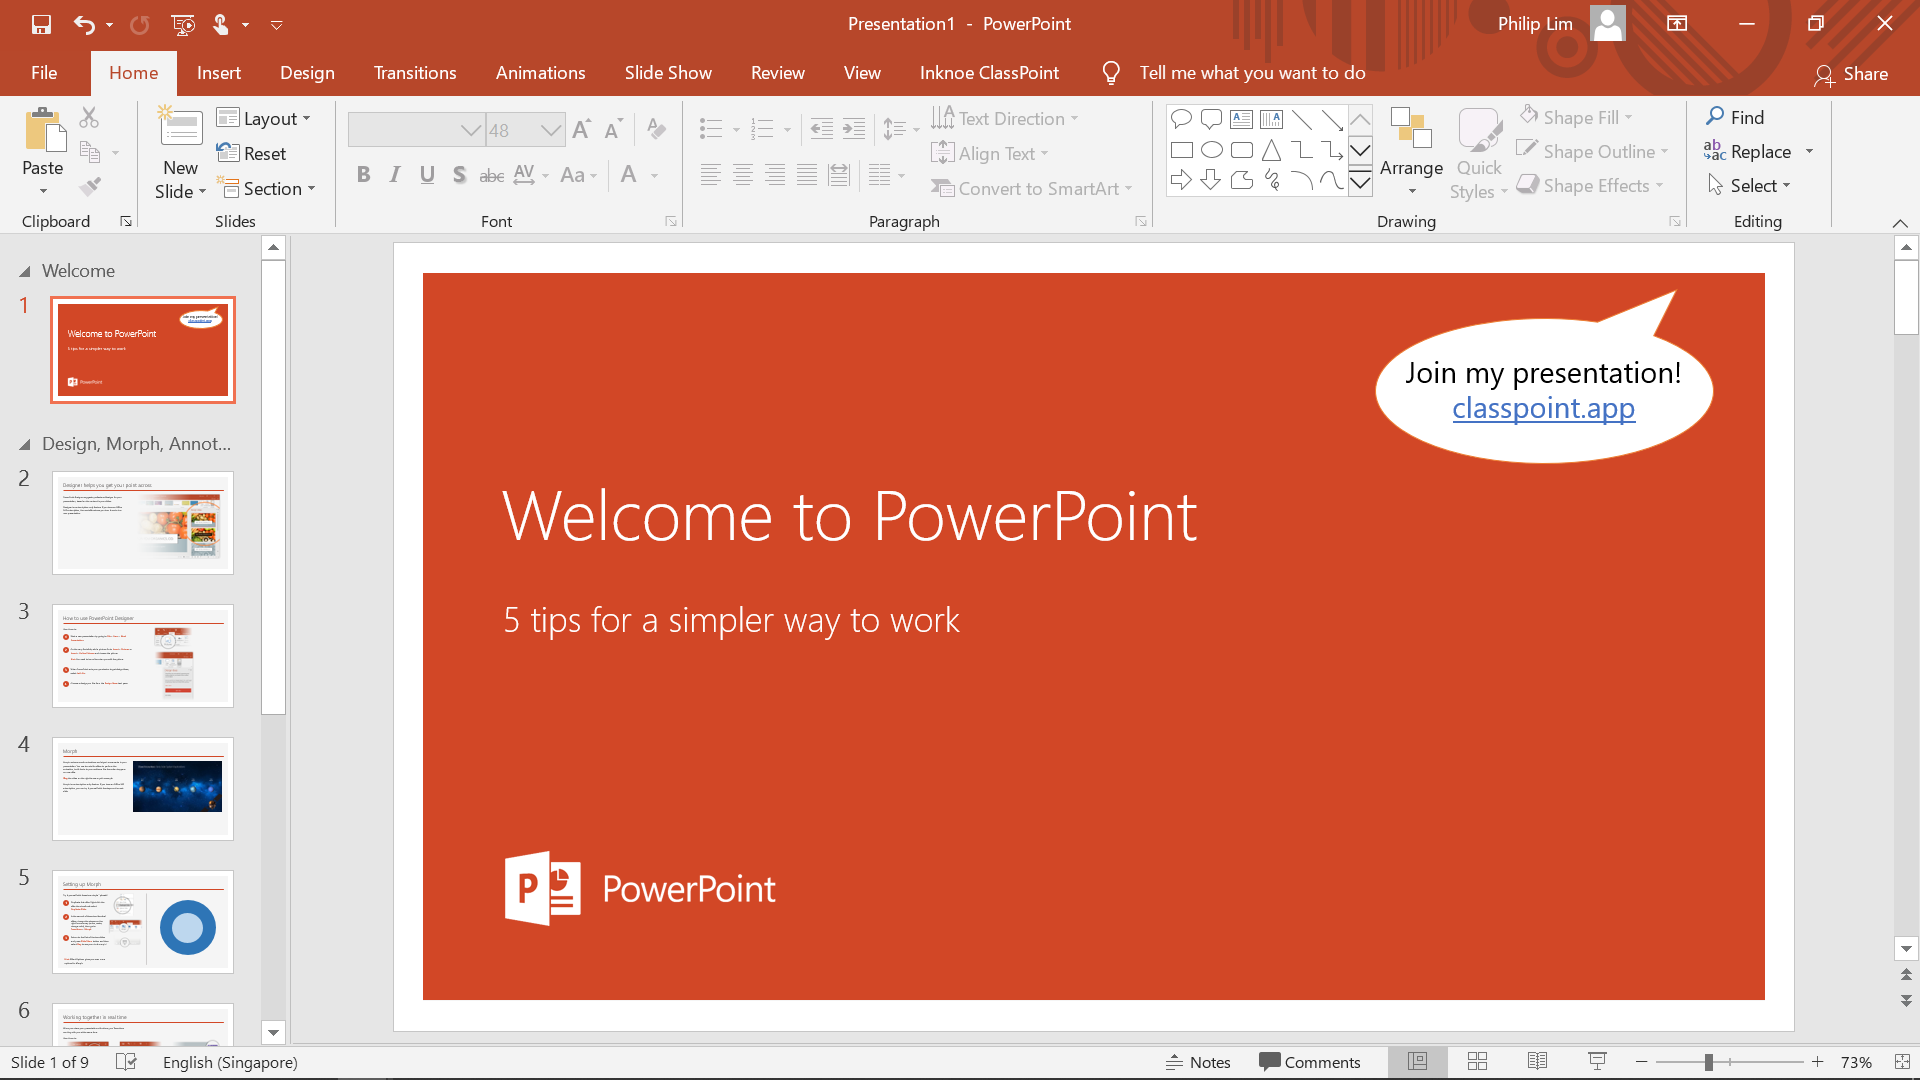 لقطة شاشة لبرنامج PowerPoint مع تلميح أداة ClassPoint للانضمام إلى الفصل بشكل أسرع